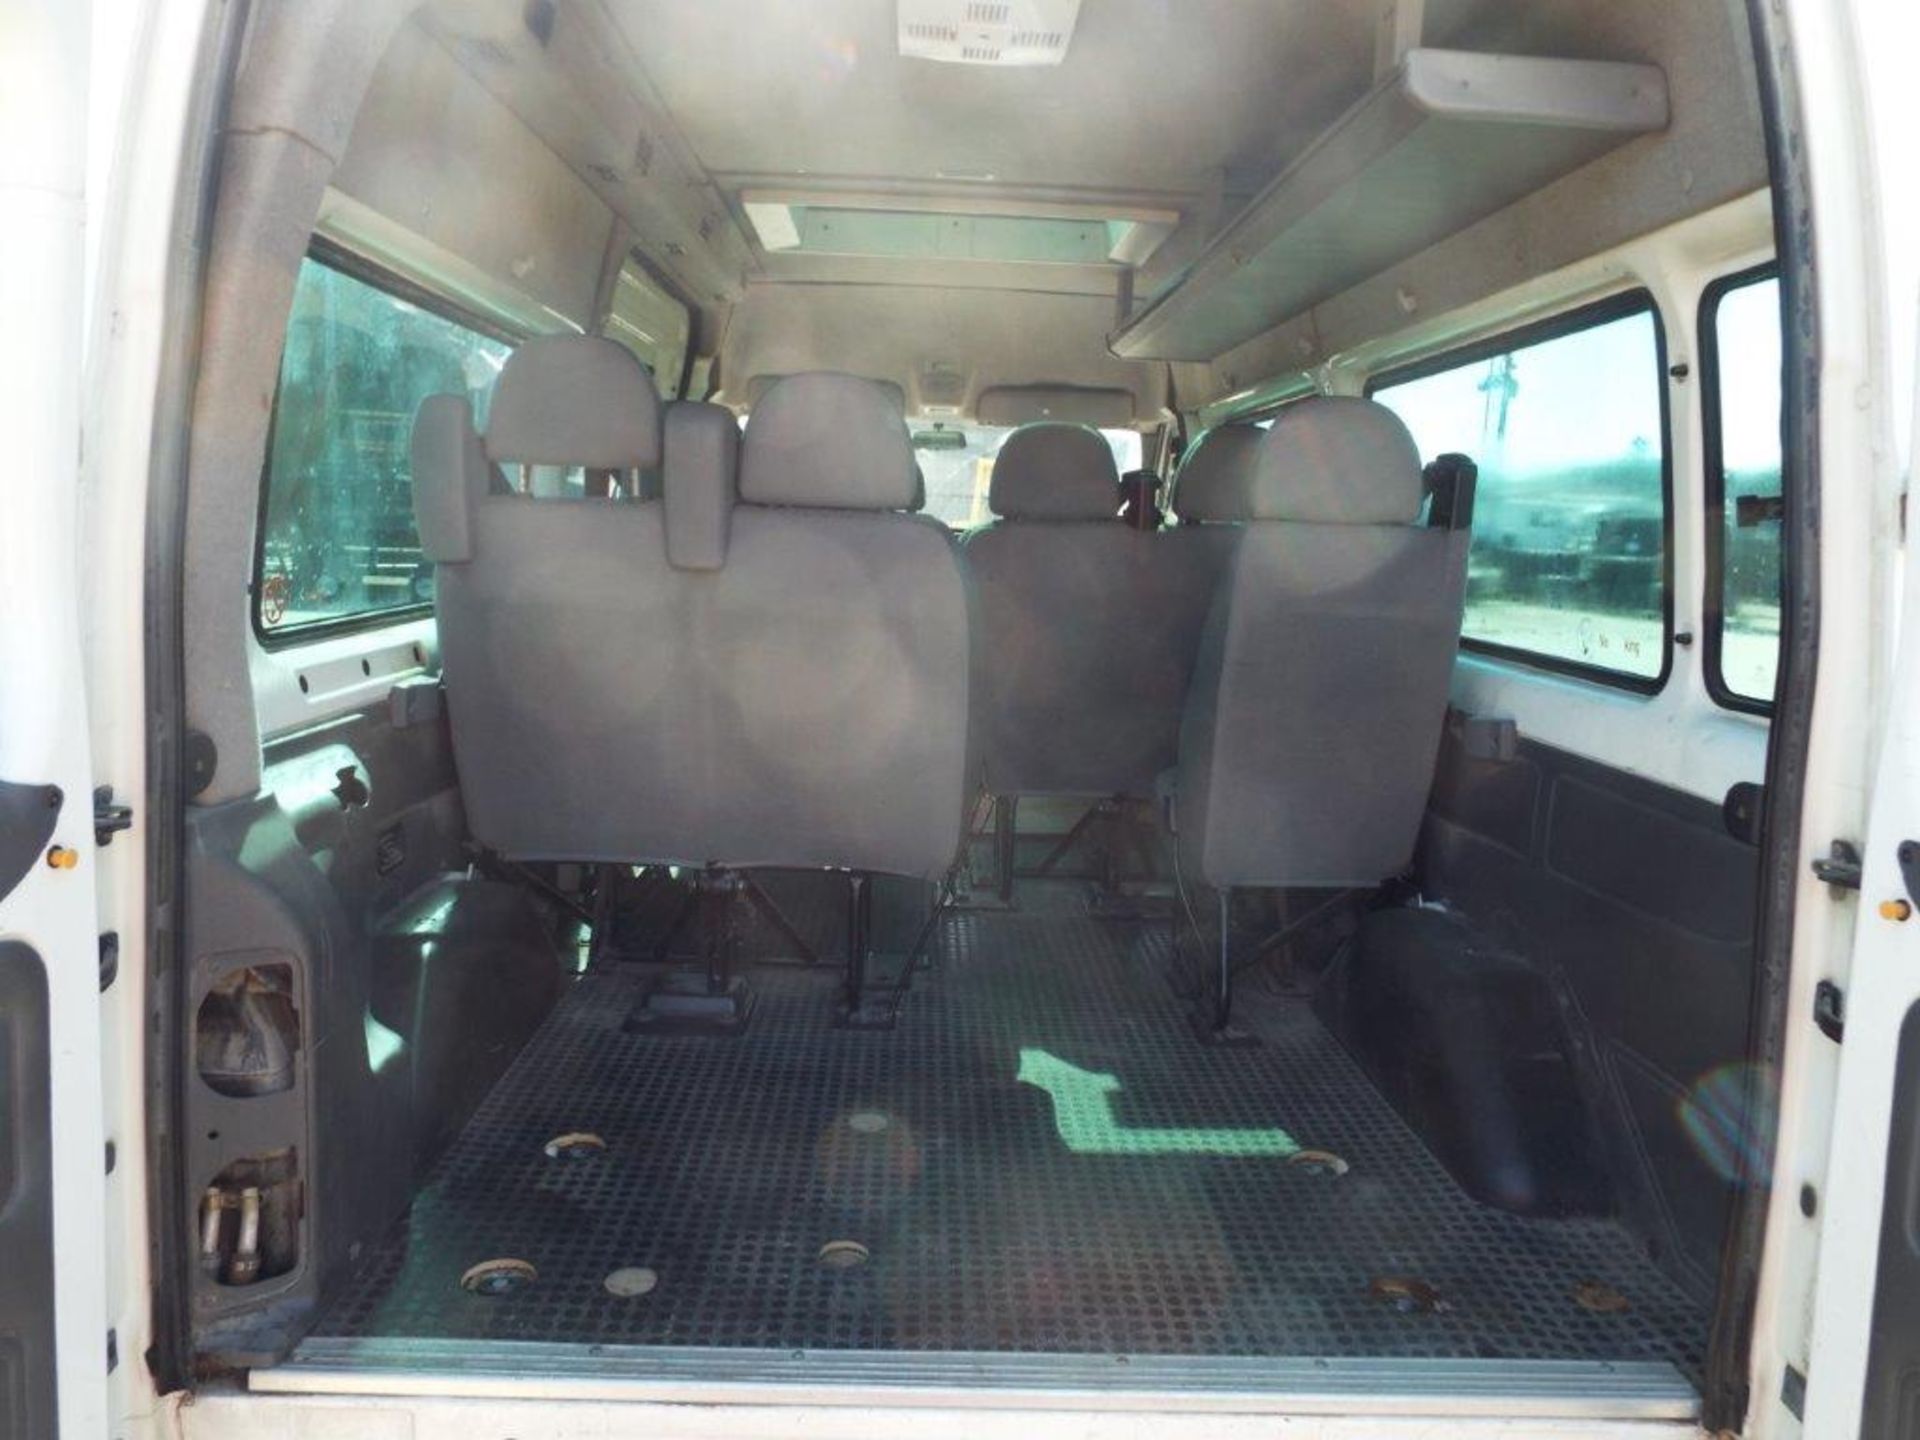 Ford Transit 9 Seat Minibus - Image 15 of 21